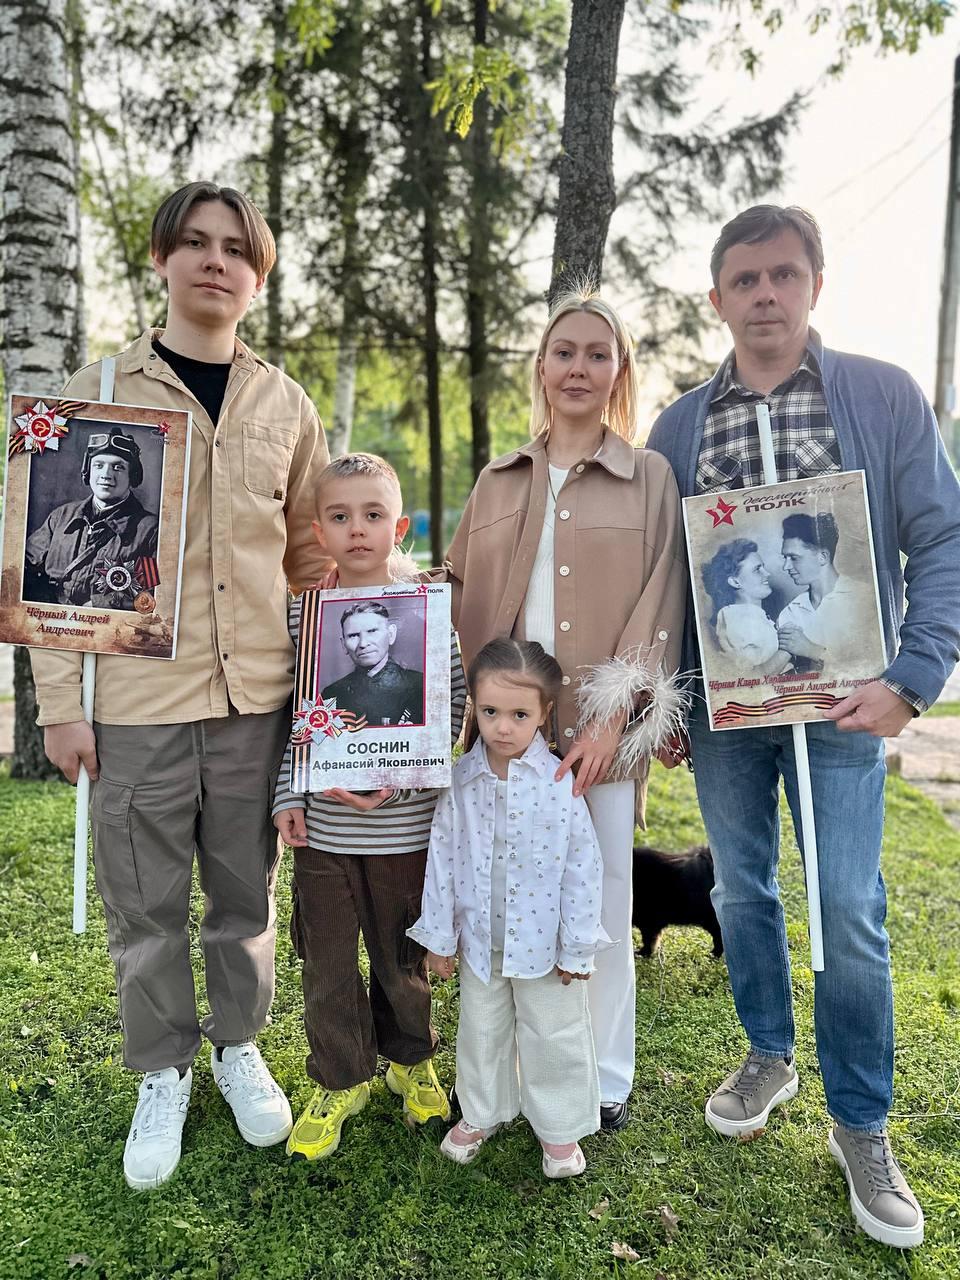 Губернатор Орловской области Андрей Клычков с семьей принял участие в акции "Бессмертный полк"
